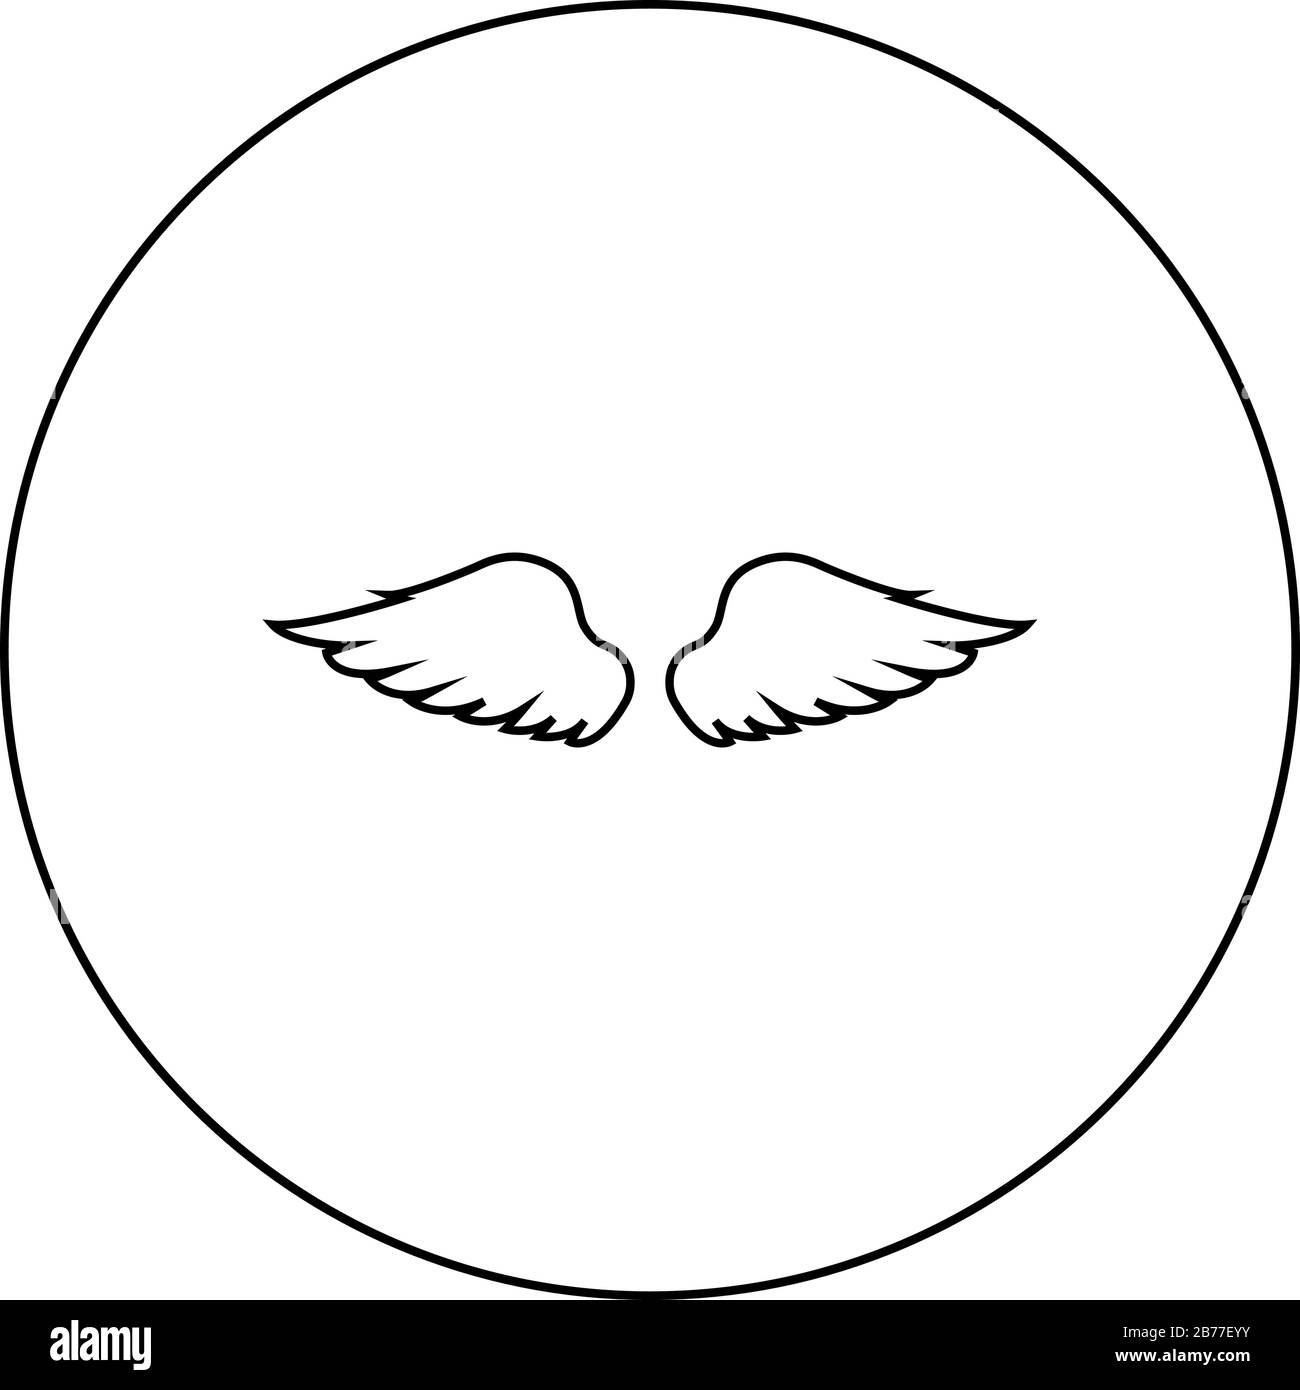 Ailes d'oiseau diable ange paire de propagation de la partie animale Fly concept Freedom Idea icône dans le cercle autour contour noir illustration vectorielle plate Illustration de Vecteur